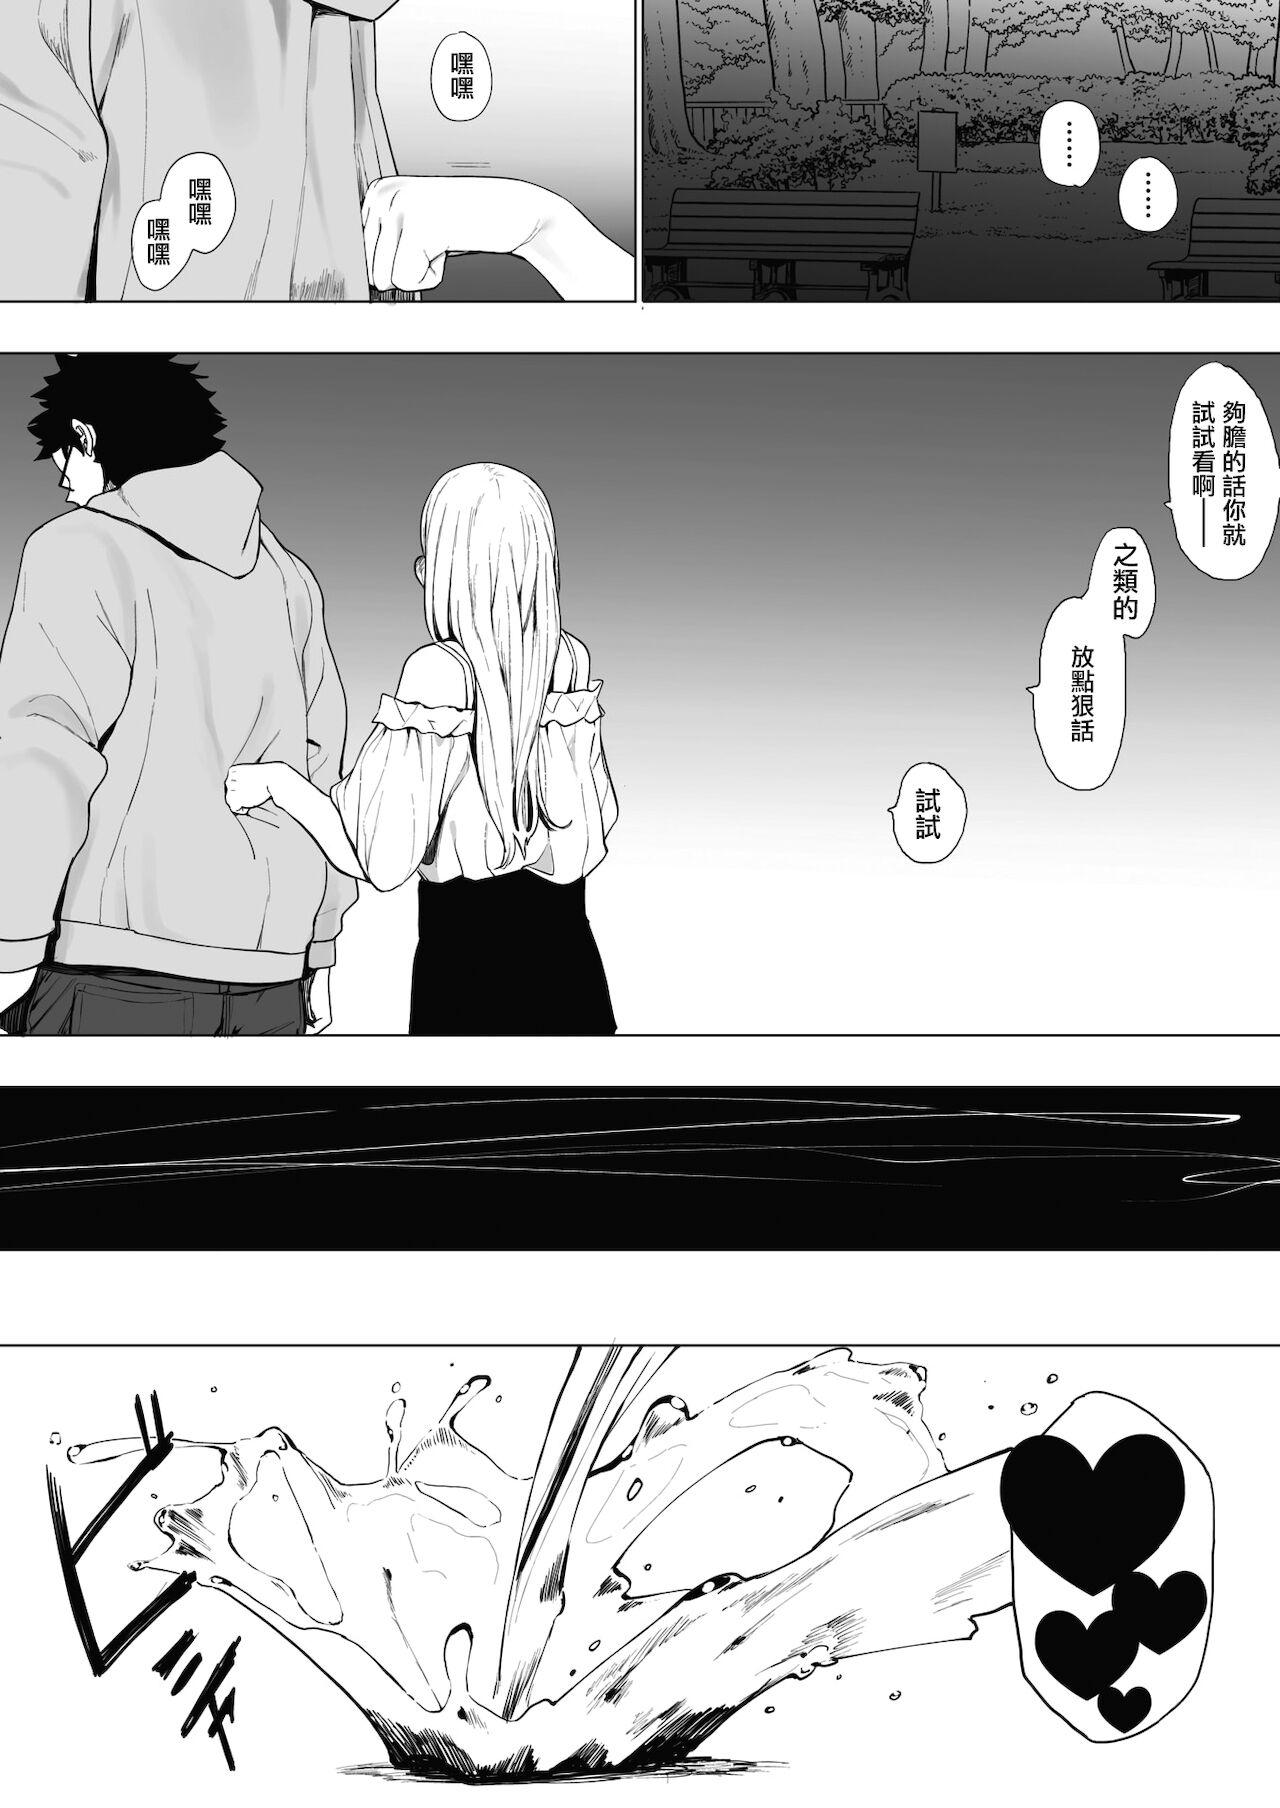 EIGHTMANsensei no okage de Kanojo ga dekimashita! 2 | I Got a Girlfriend with Eightman-sensei's Help! 2 19